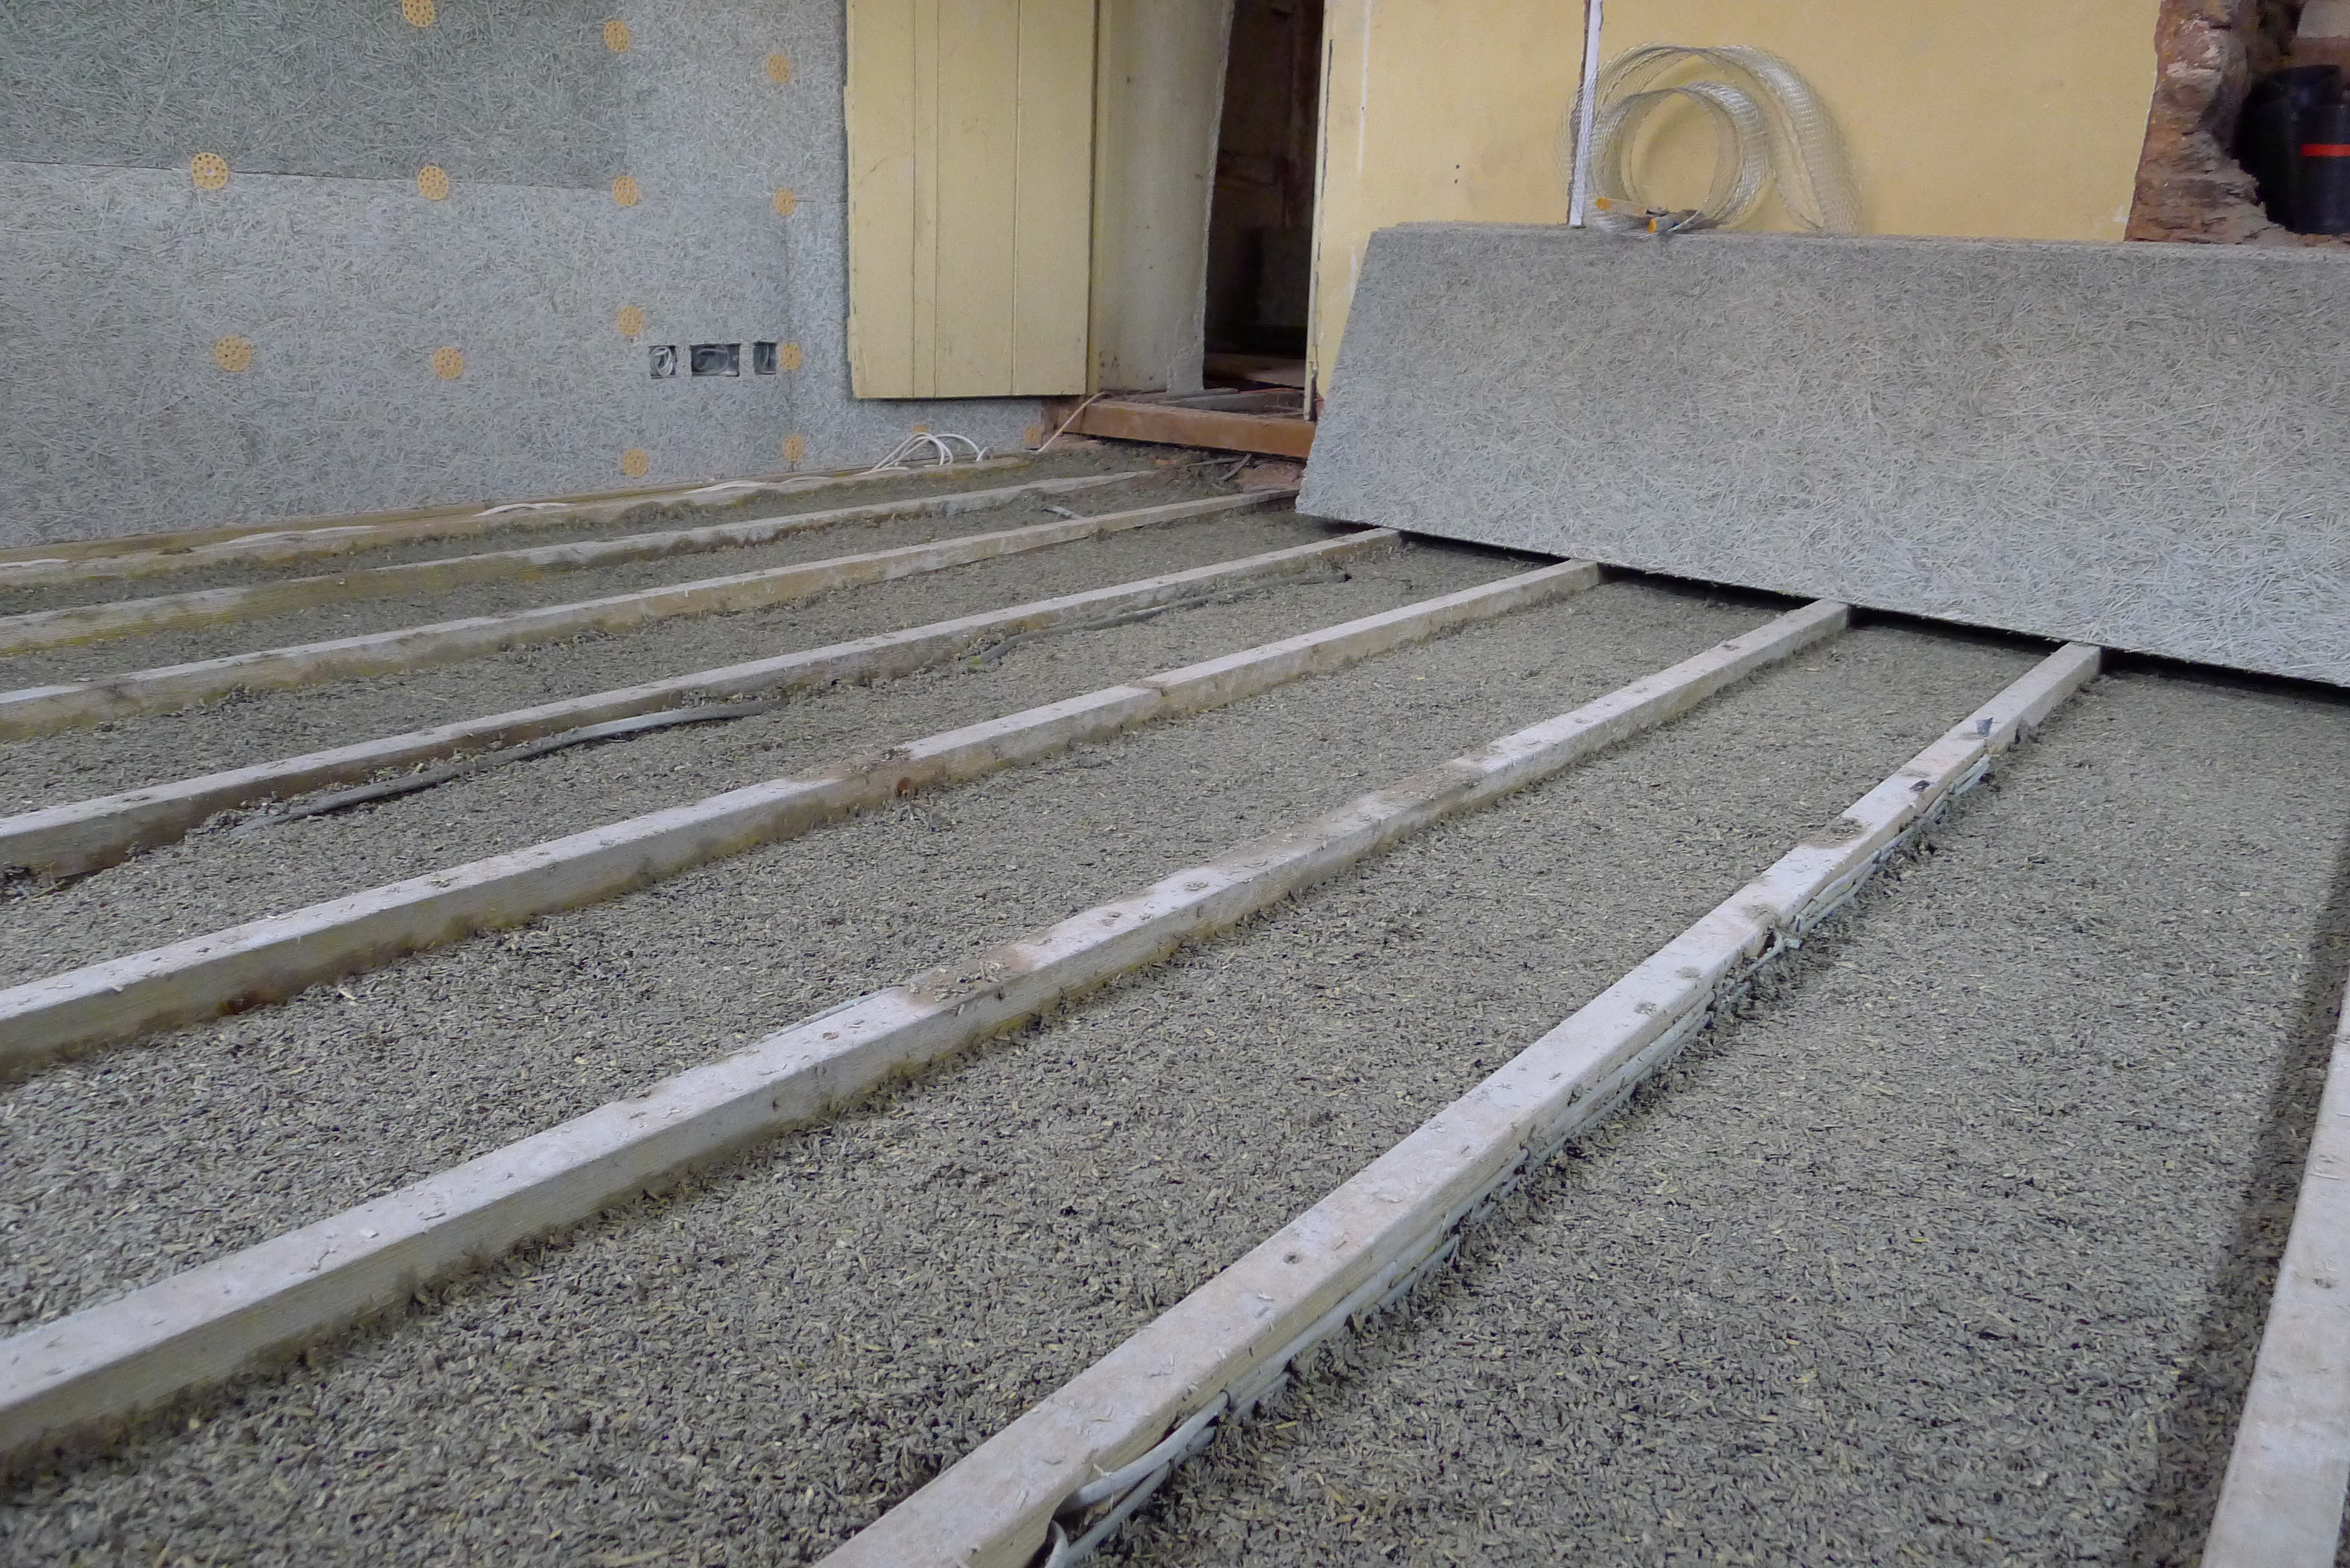 hempcrete cast between floor joists with service void before installation of floor finish